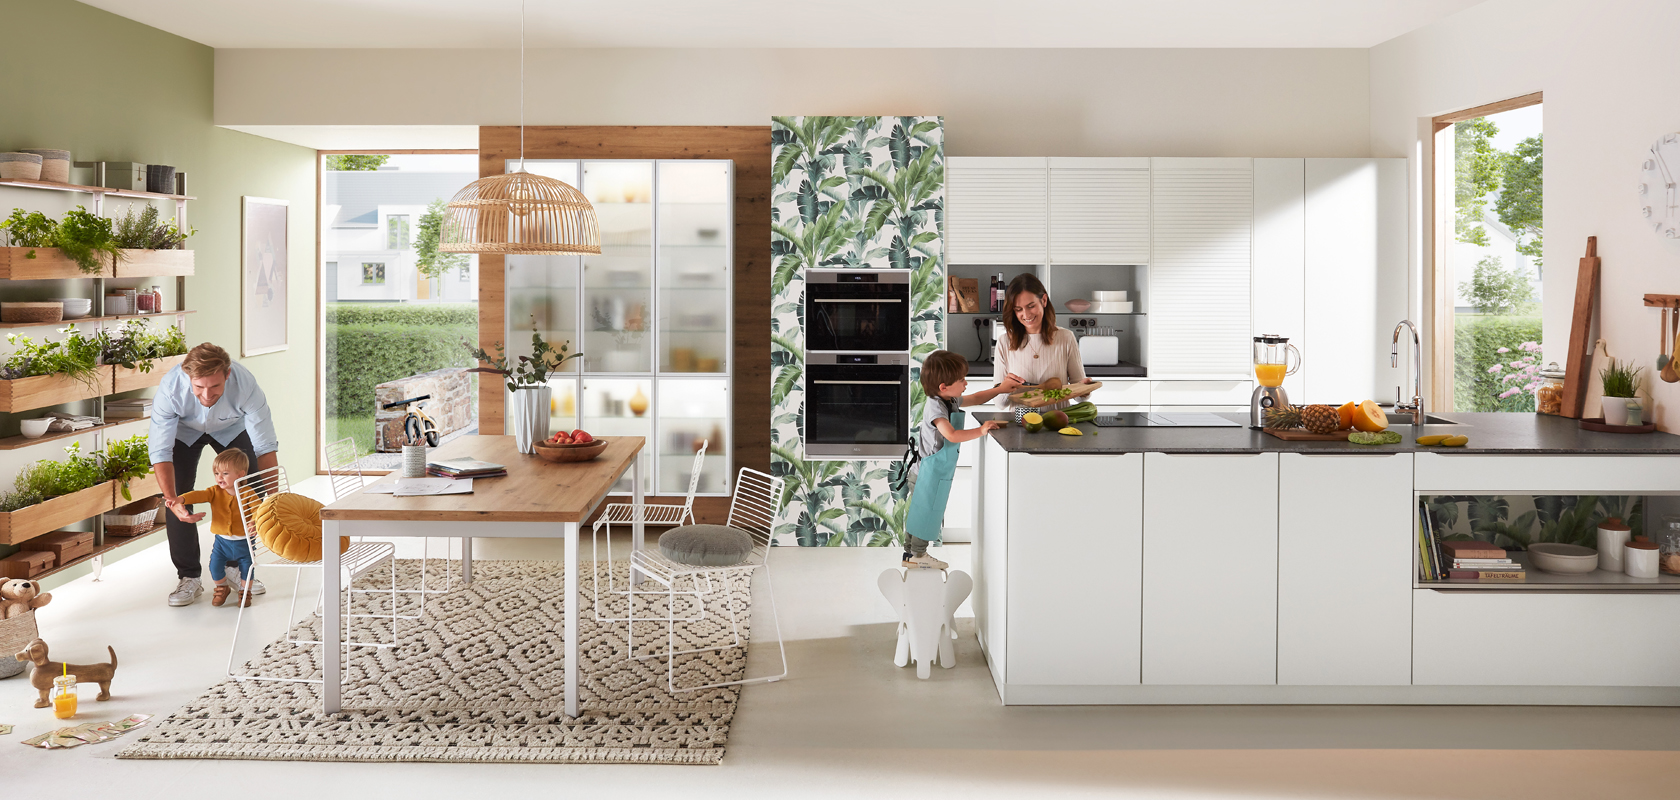 Moderne keukenscène met een gezin; een persoon die kookt, een kind dat met een hond speelt, en een andere persoon die aan een tafel werkt, waarbij een levendige huiselijke omgeving wordt getoond.